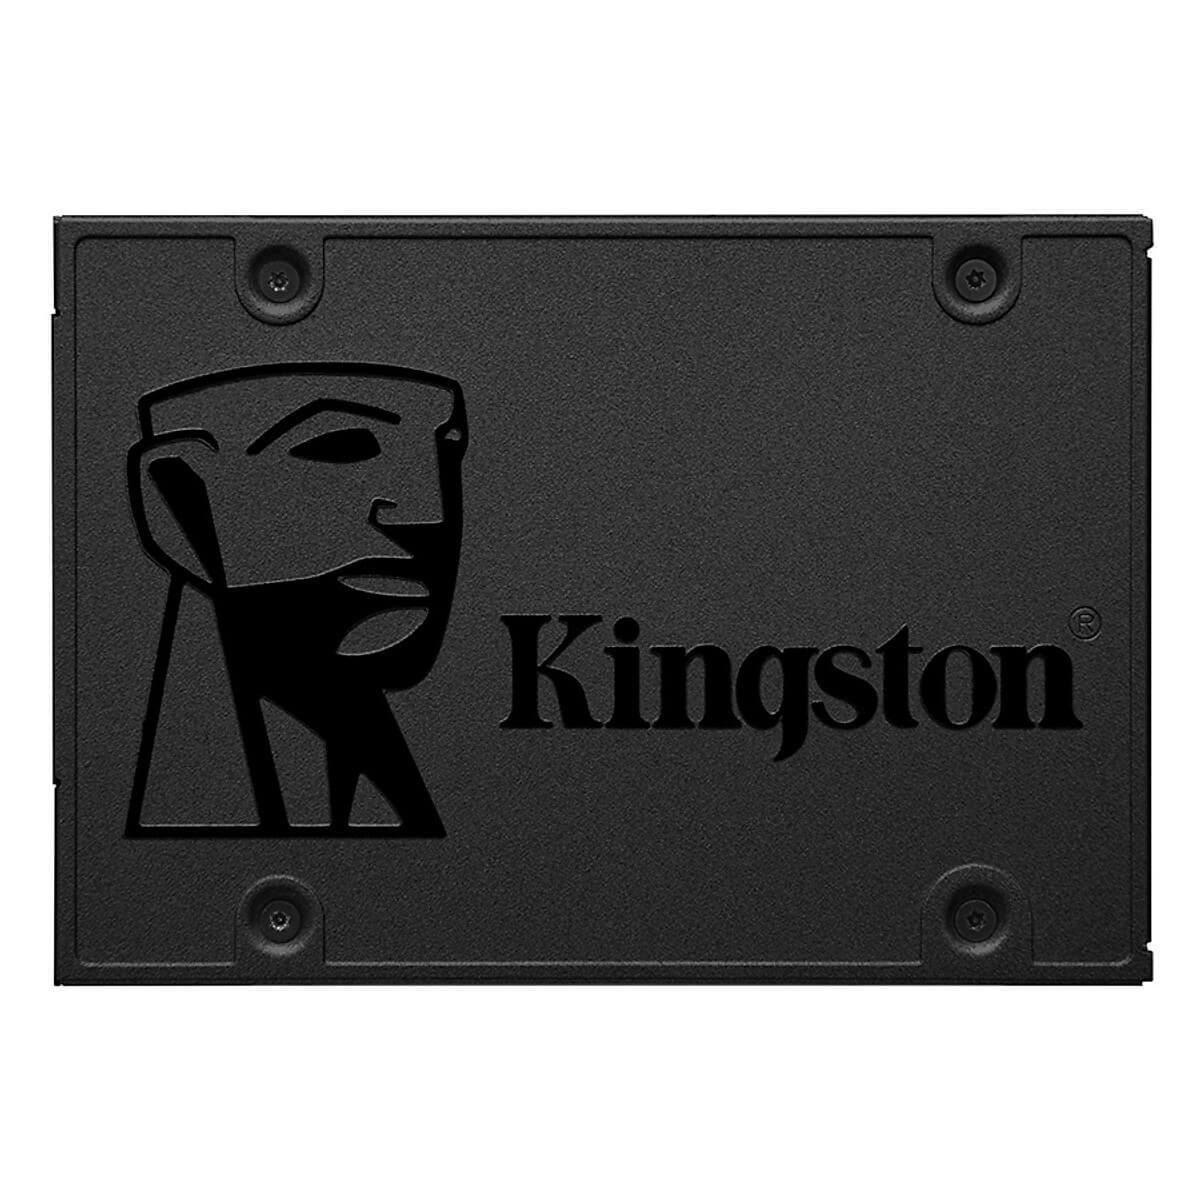 SSD Kingston AQ400,  240G, Bảo hành 36 tháng